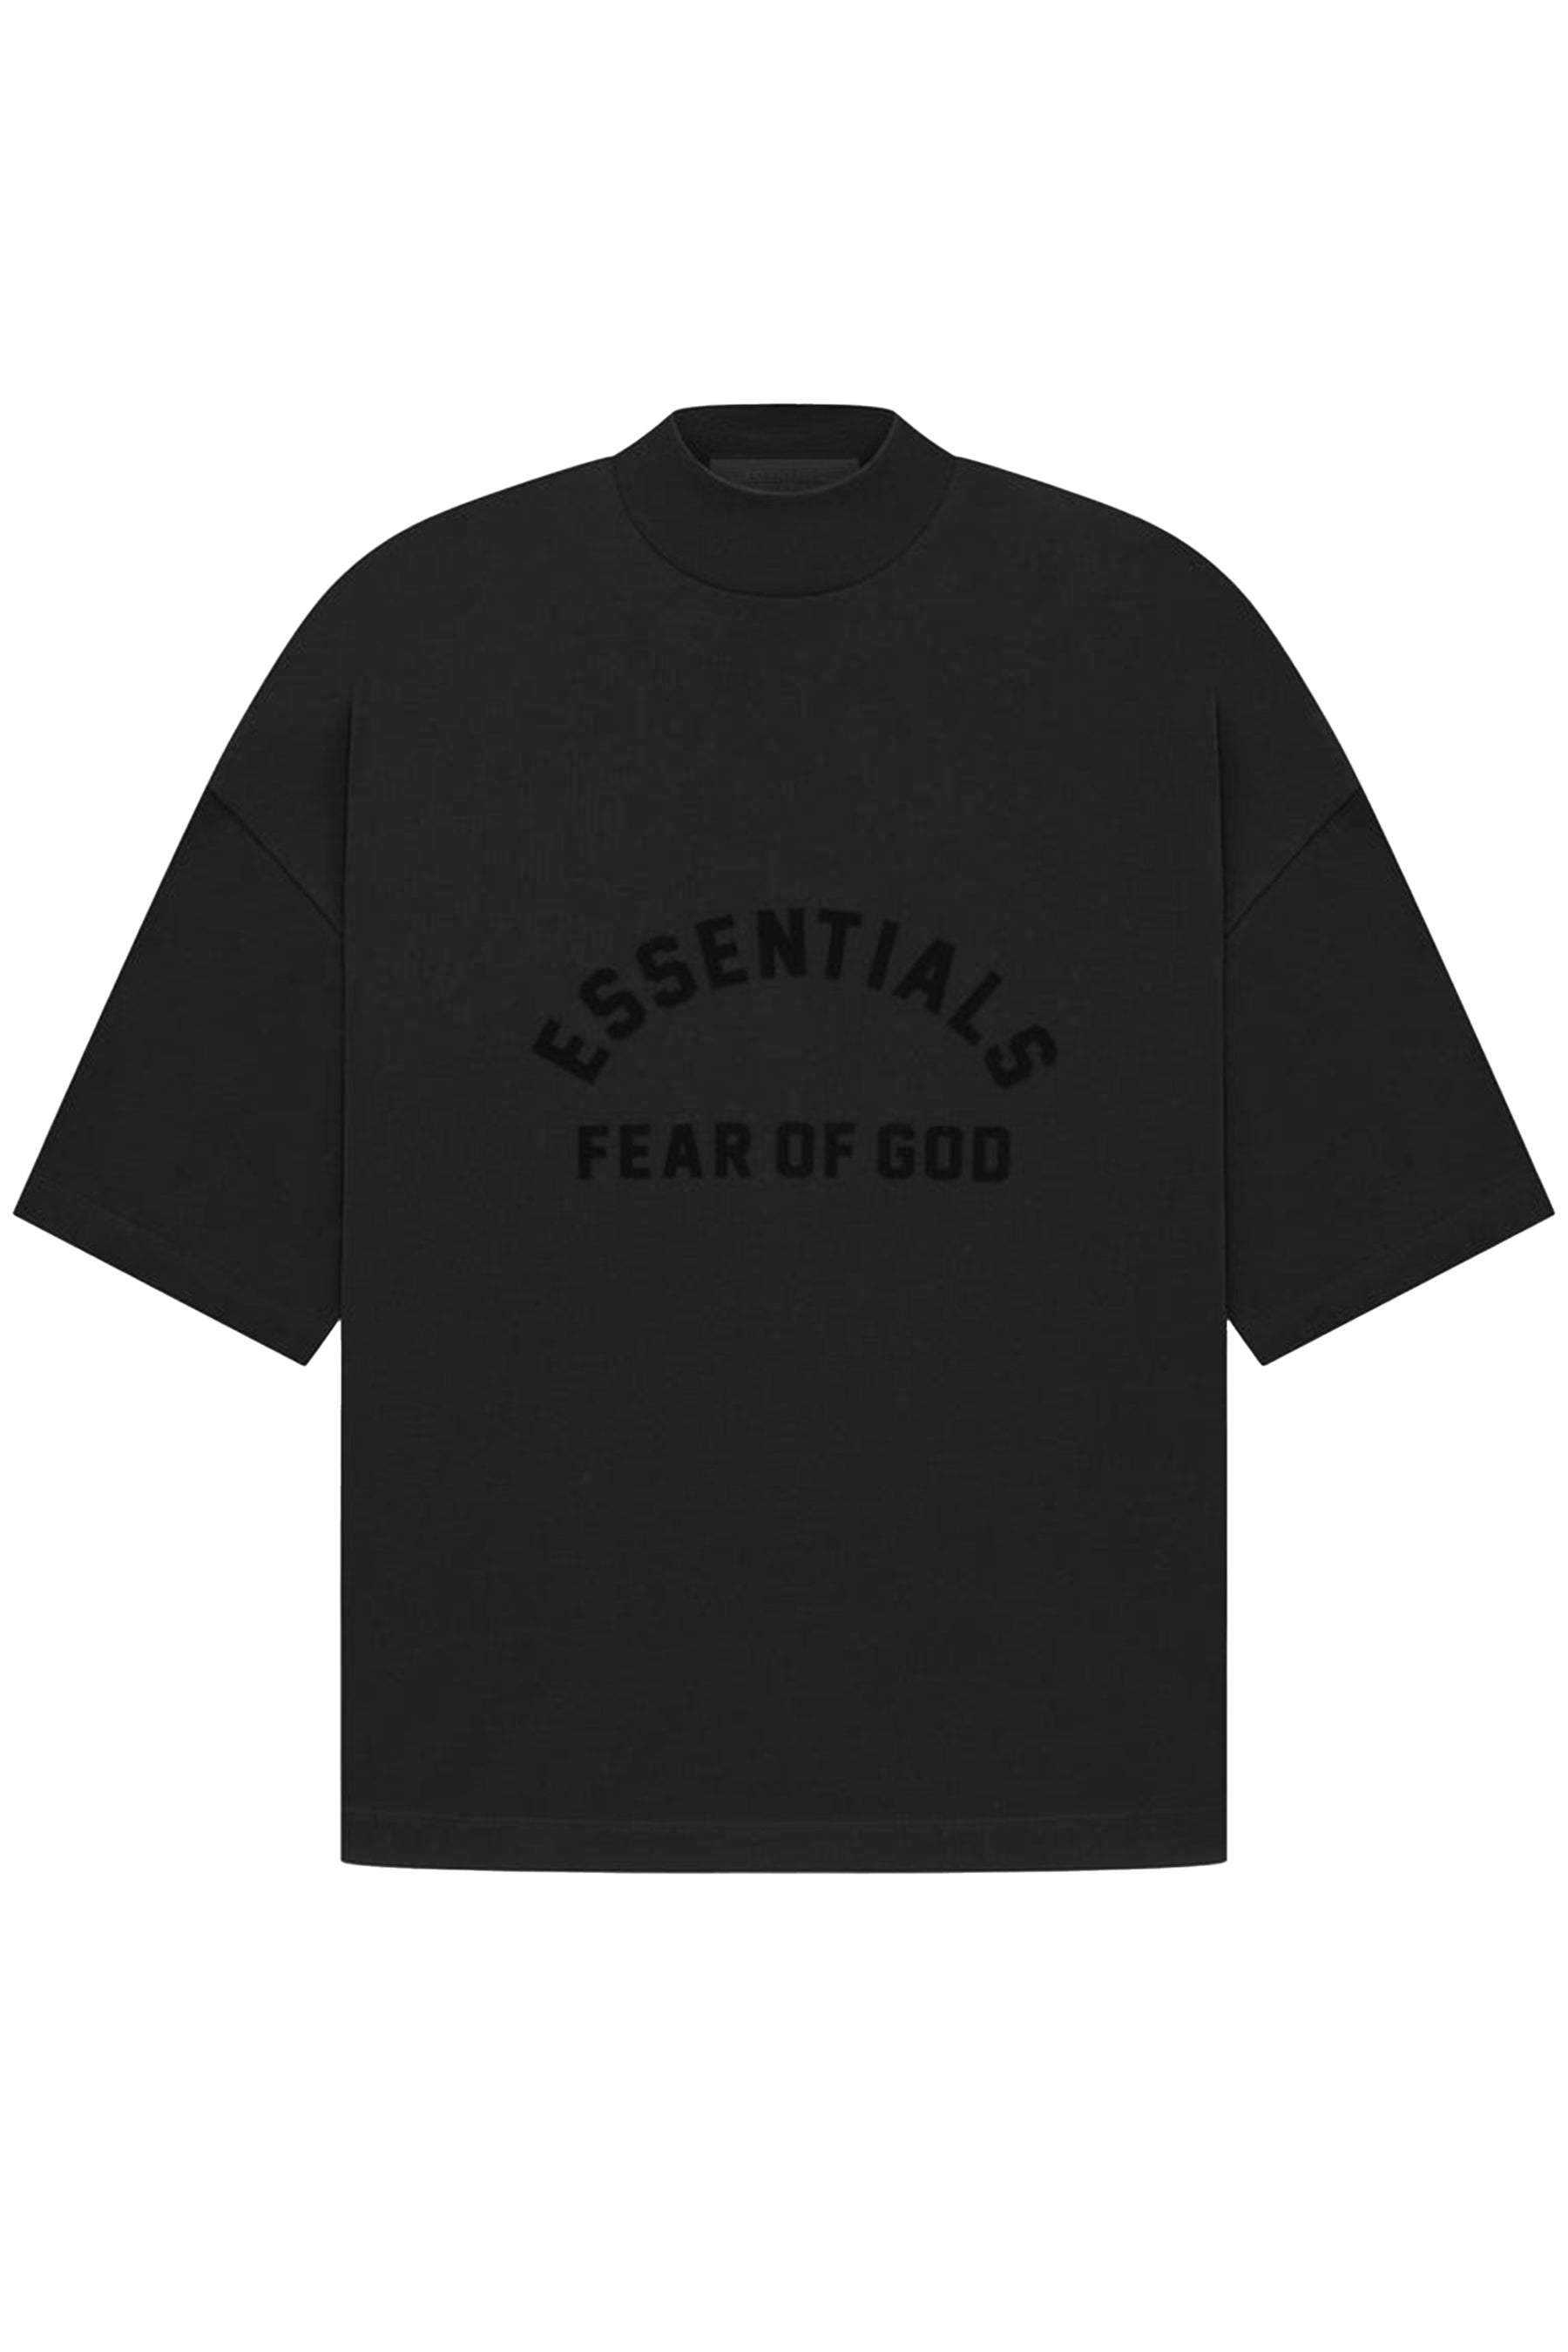 FEAR OF GOD ESSENTIALS Tshirt